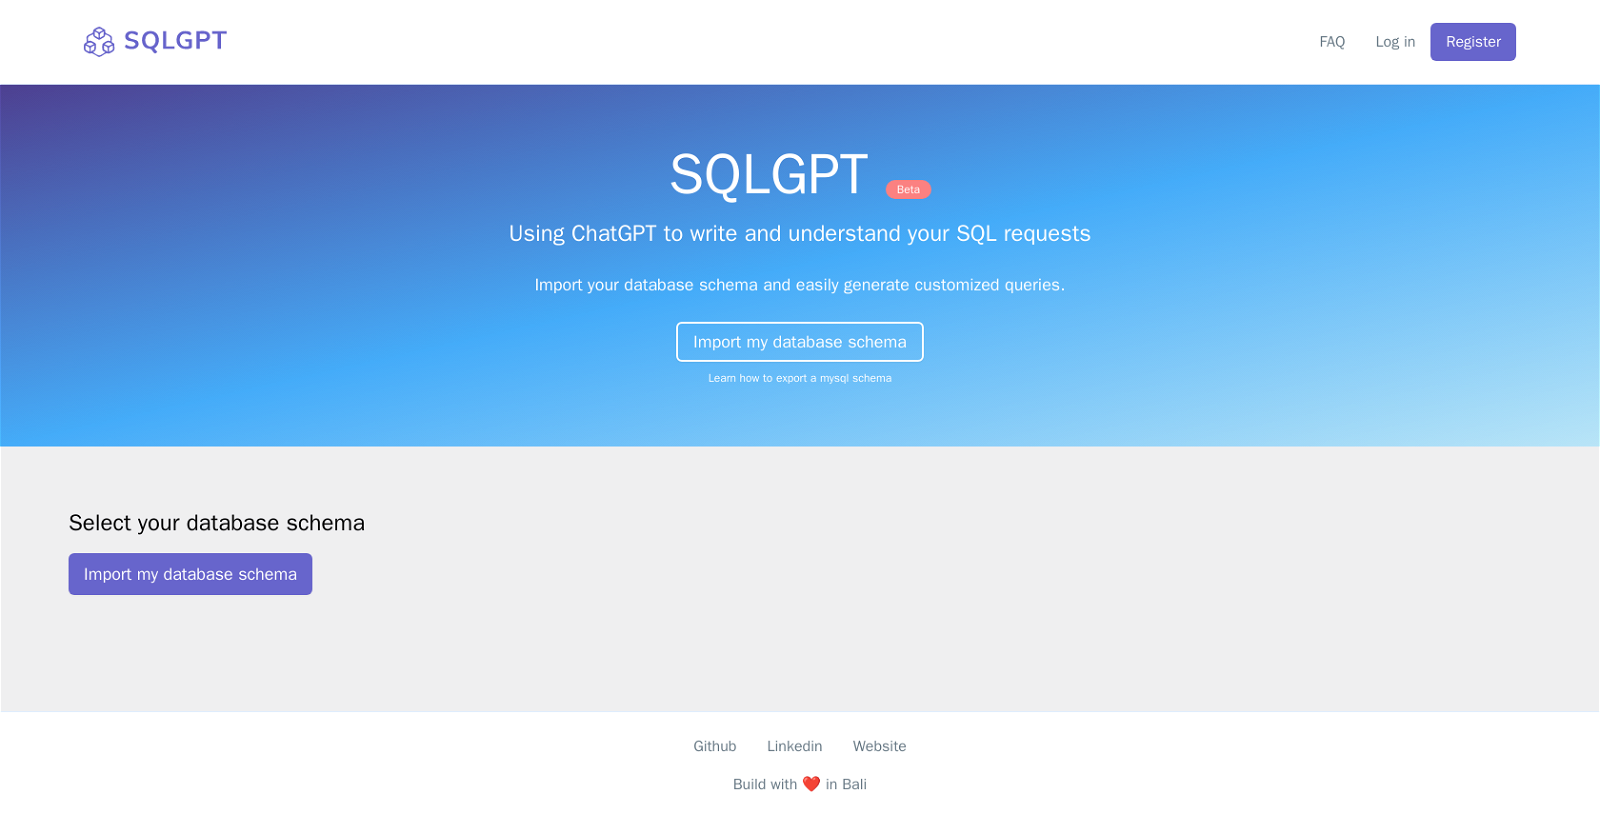 SQLGPT website